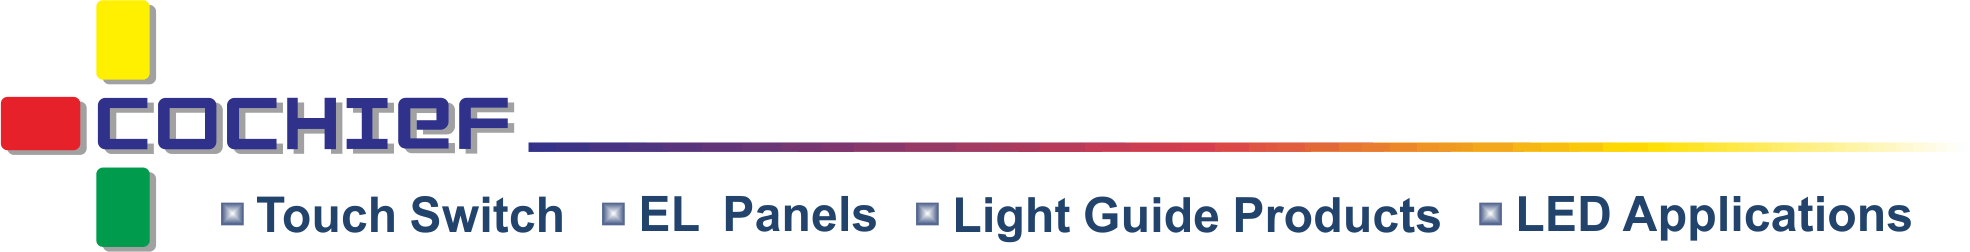 皓智企業股份有限公司 - 静電容量スマートライトエフェクトタッチモジュール、薄型タッチフィルム、コールドライト、ライトガイドの開発、設計、製造。